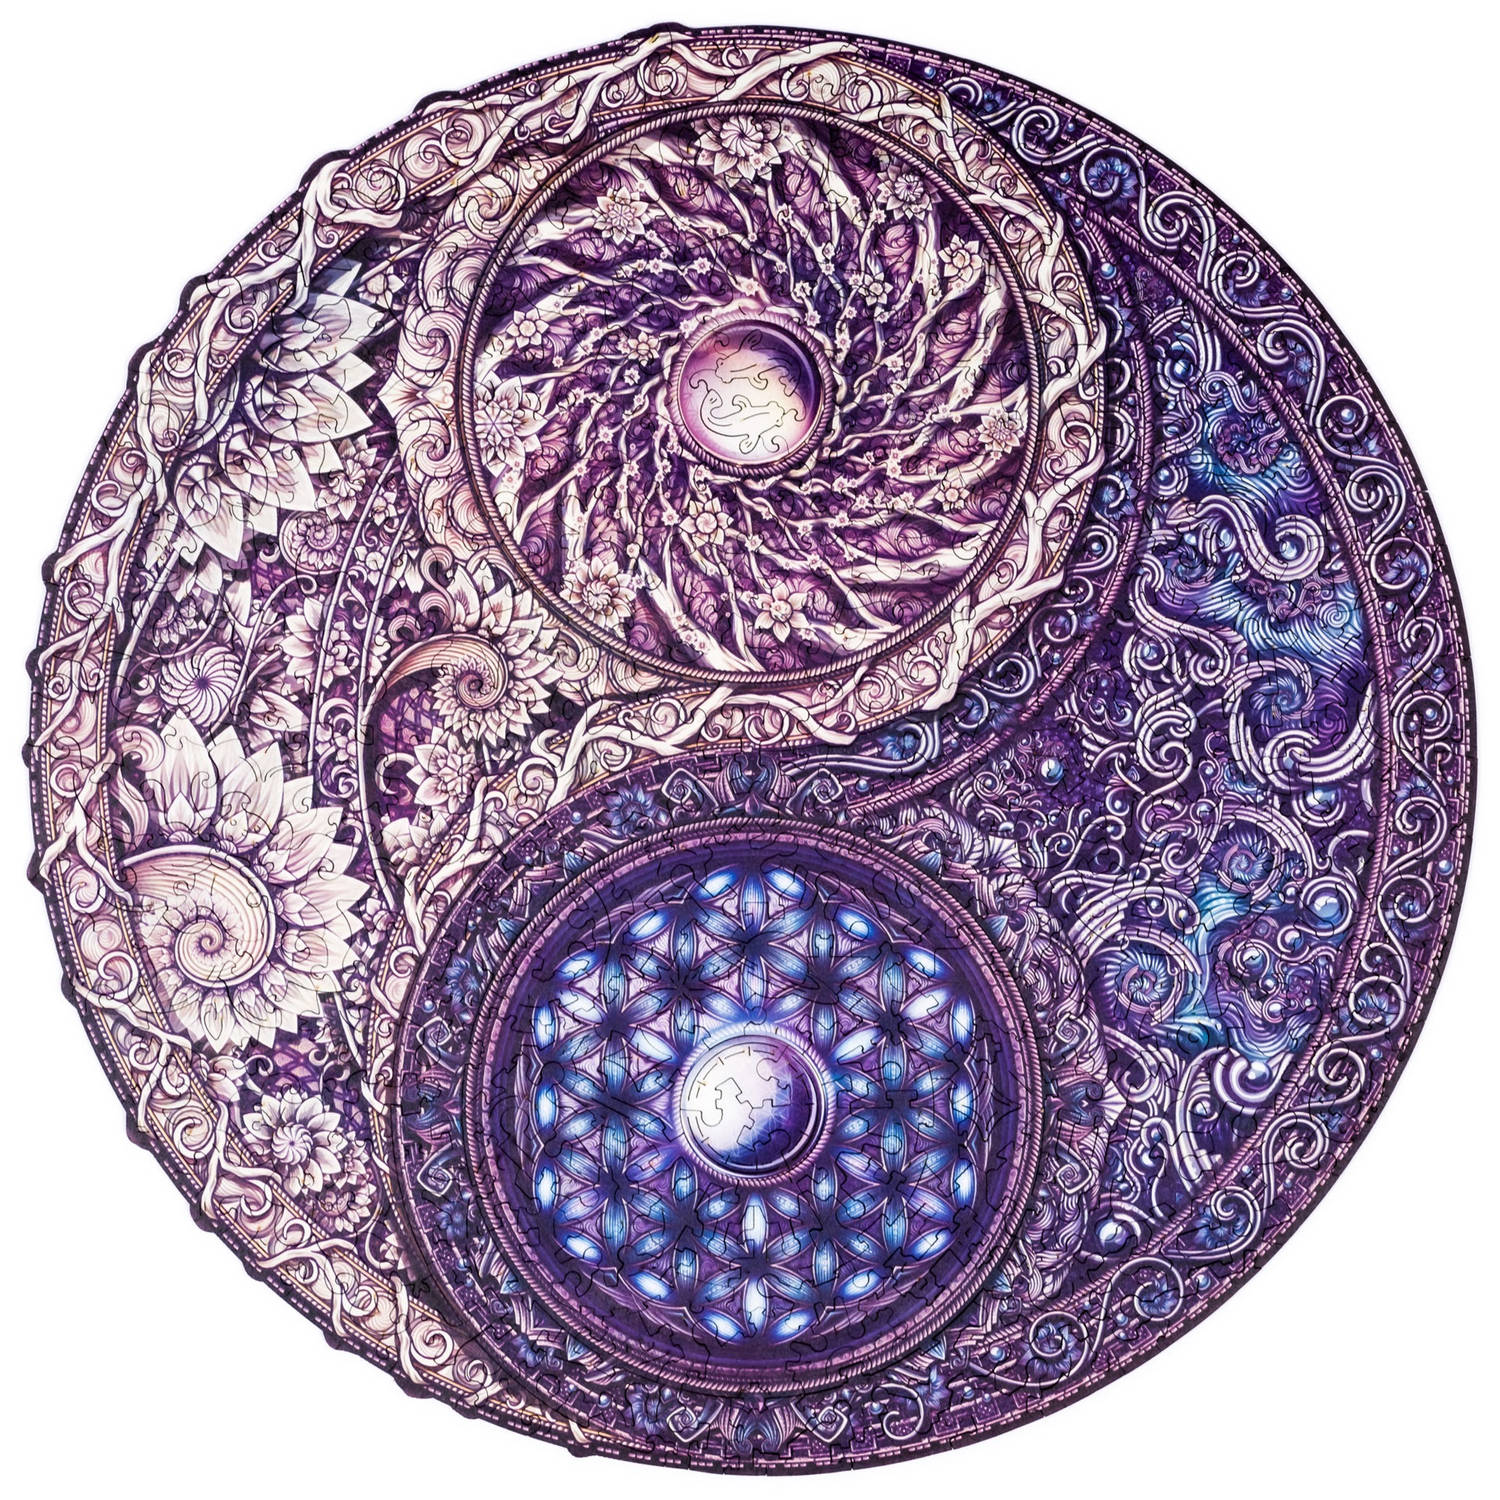 UNIDRAGON Houten Puzzel Mandala - Overkoepelende Tegenstellingen - 350 stukjes - King Size 33x33 cm